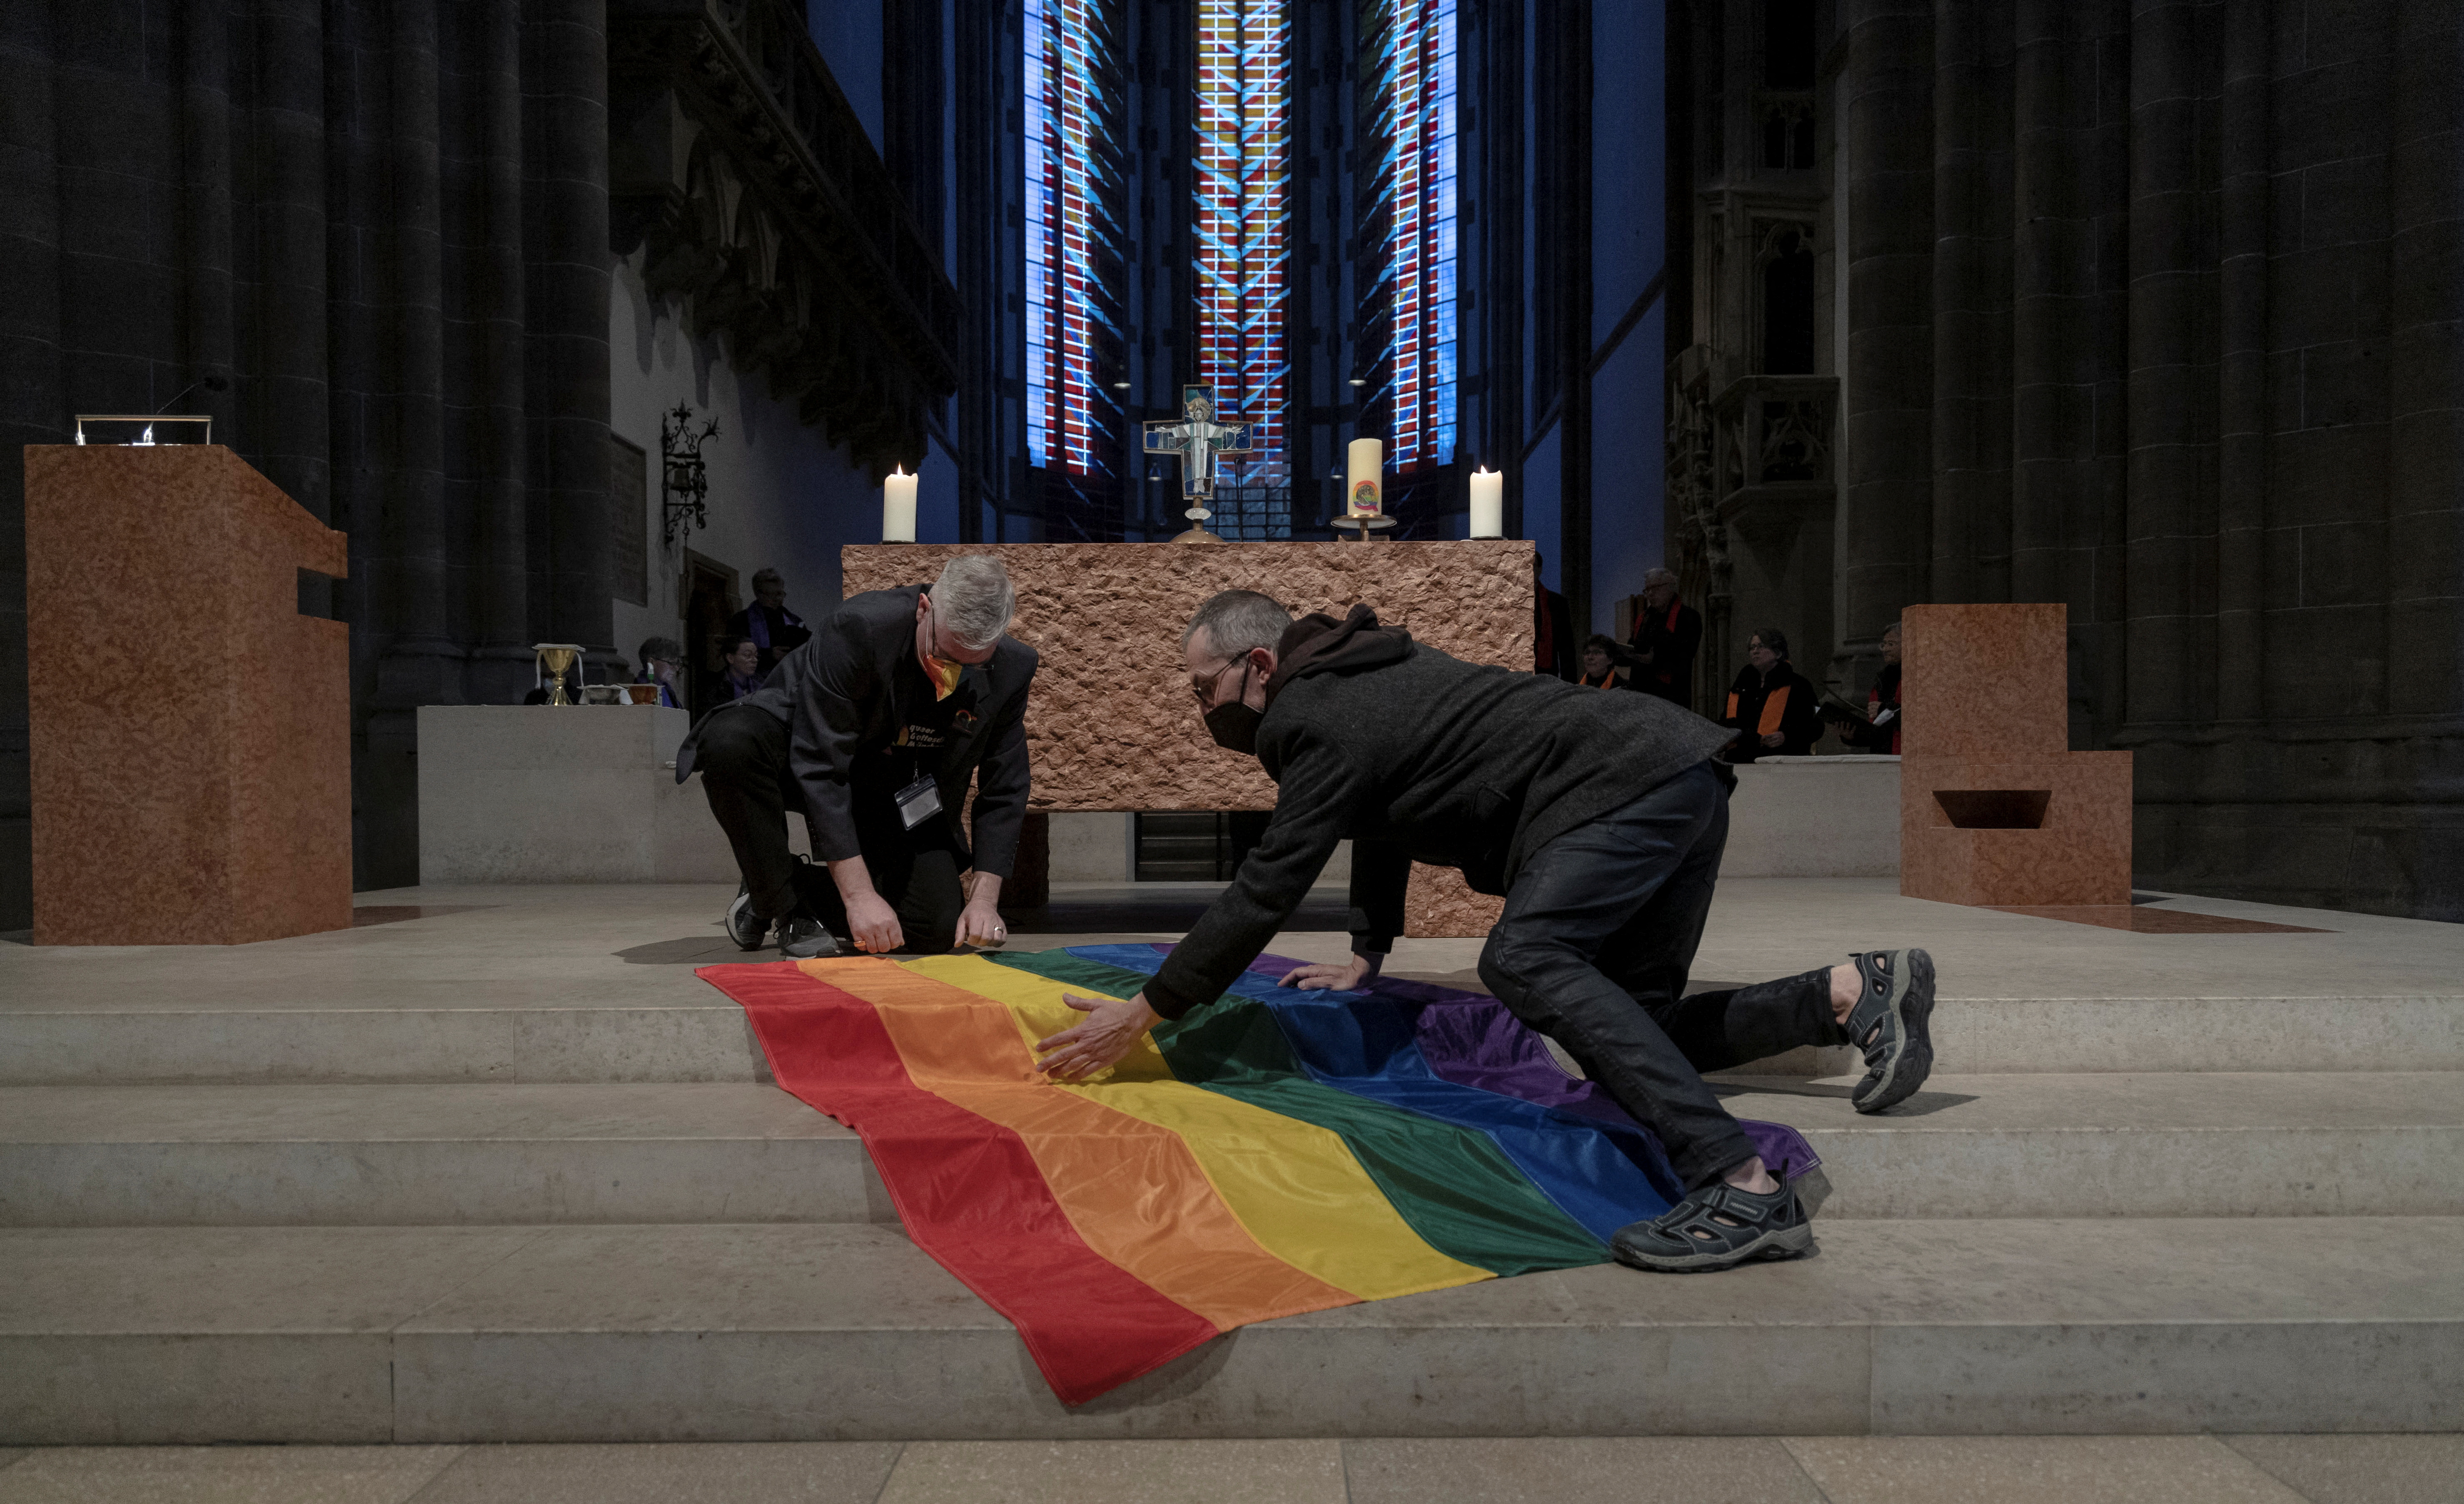 Una bandera del arco iris se coloca frente al altar antes de un servicio religioso que marca el vigésimo aniversario de la comunidad LGBTQ en la Iglesia de San Pablo, en Munich el 13 de 2022. REUTERS/Lukas Barth